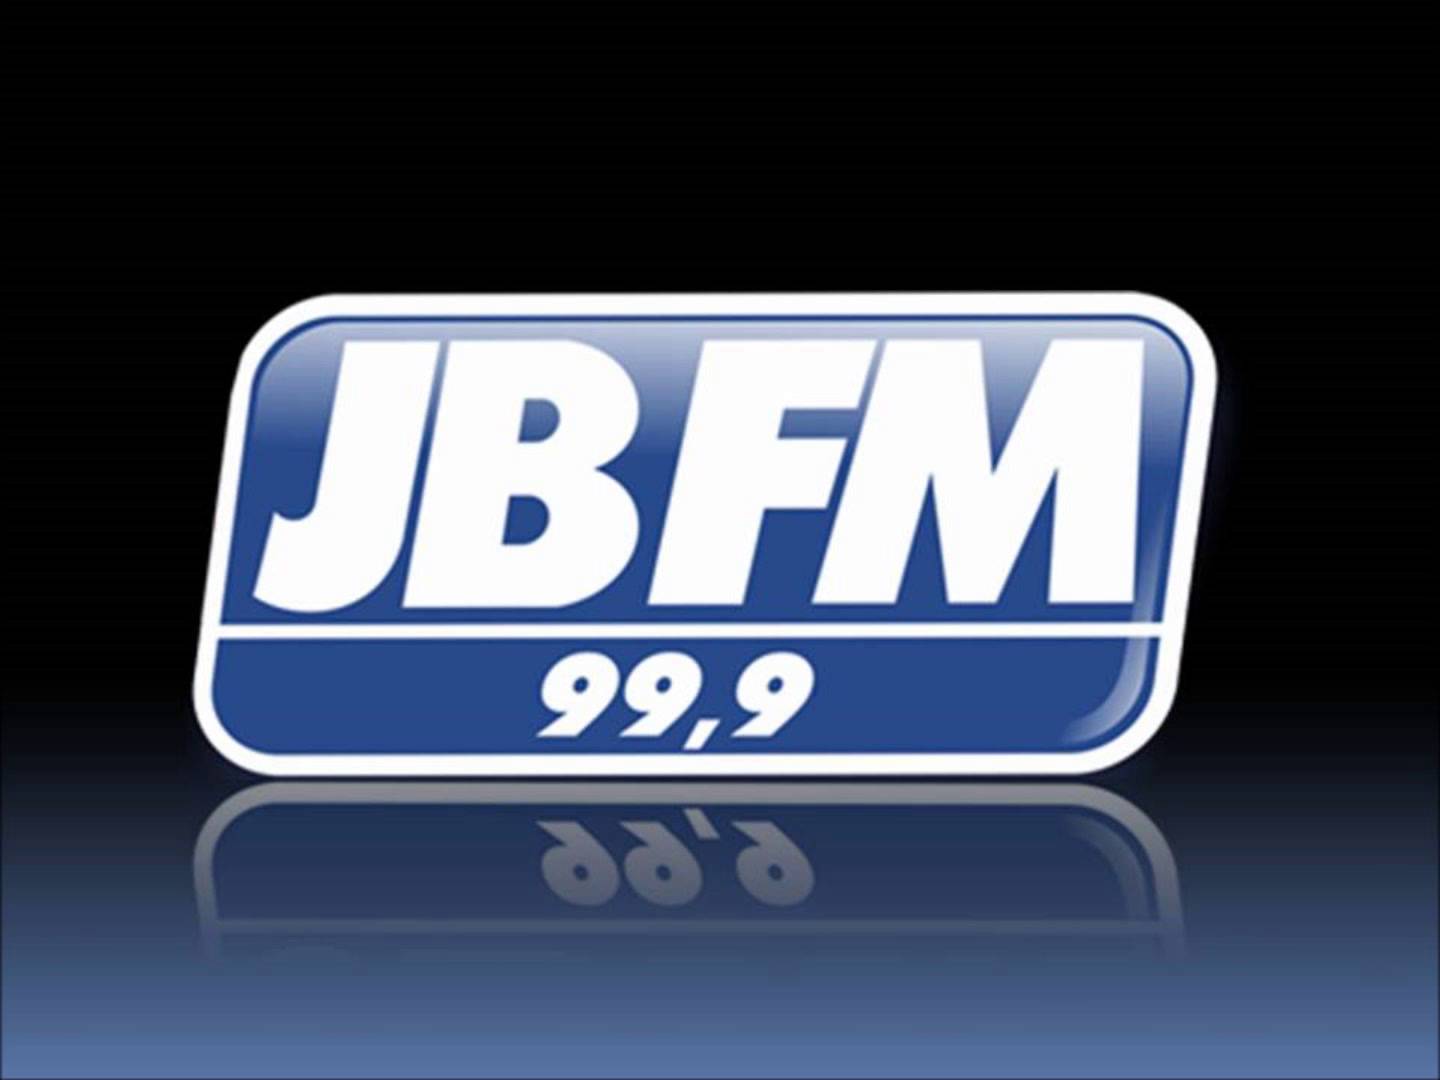 JBFM 99,9